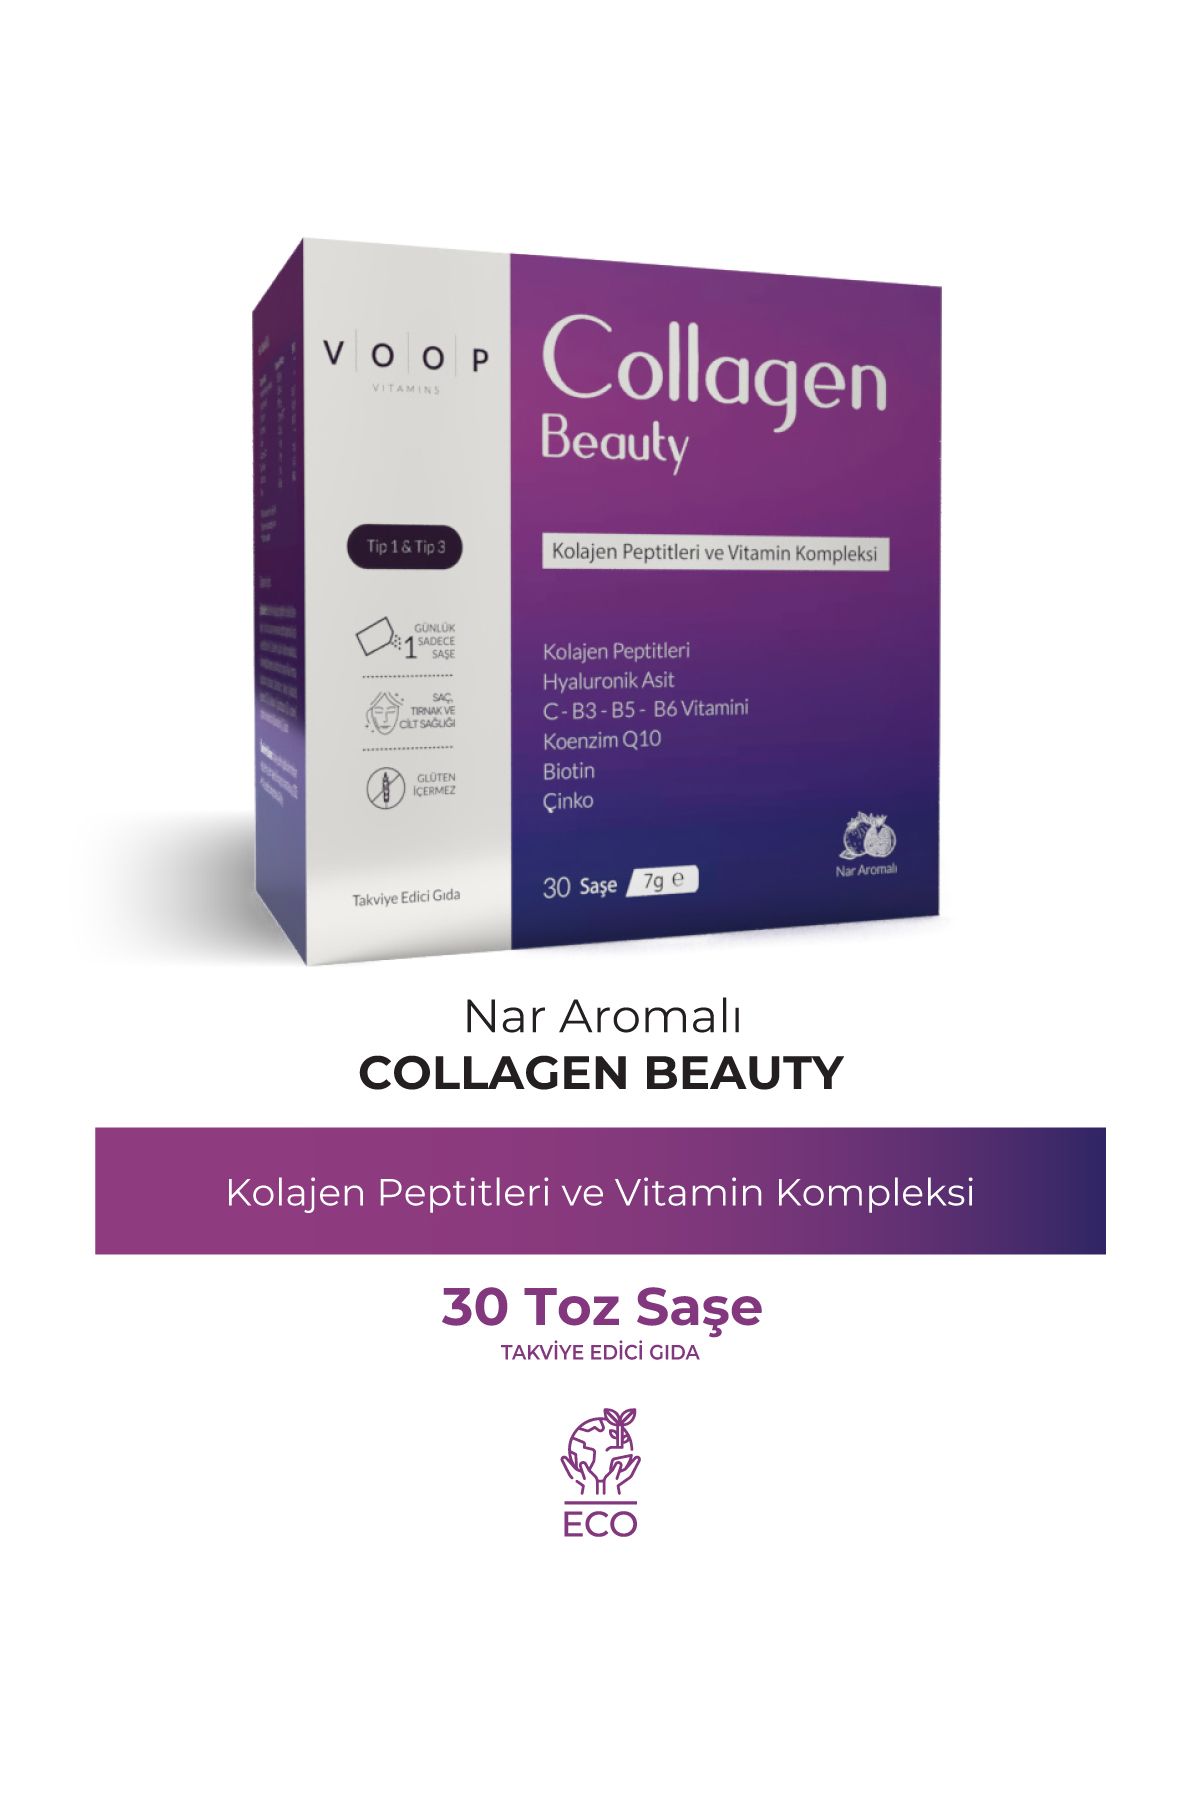 VOOP Collagen Beauty Nar Aromalı Saşe Tip 1 Ve Tip 3 - 5500 Mg 30 Adet 7 gr